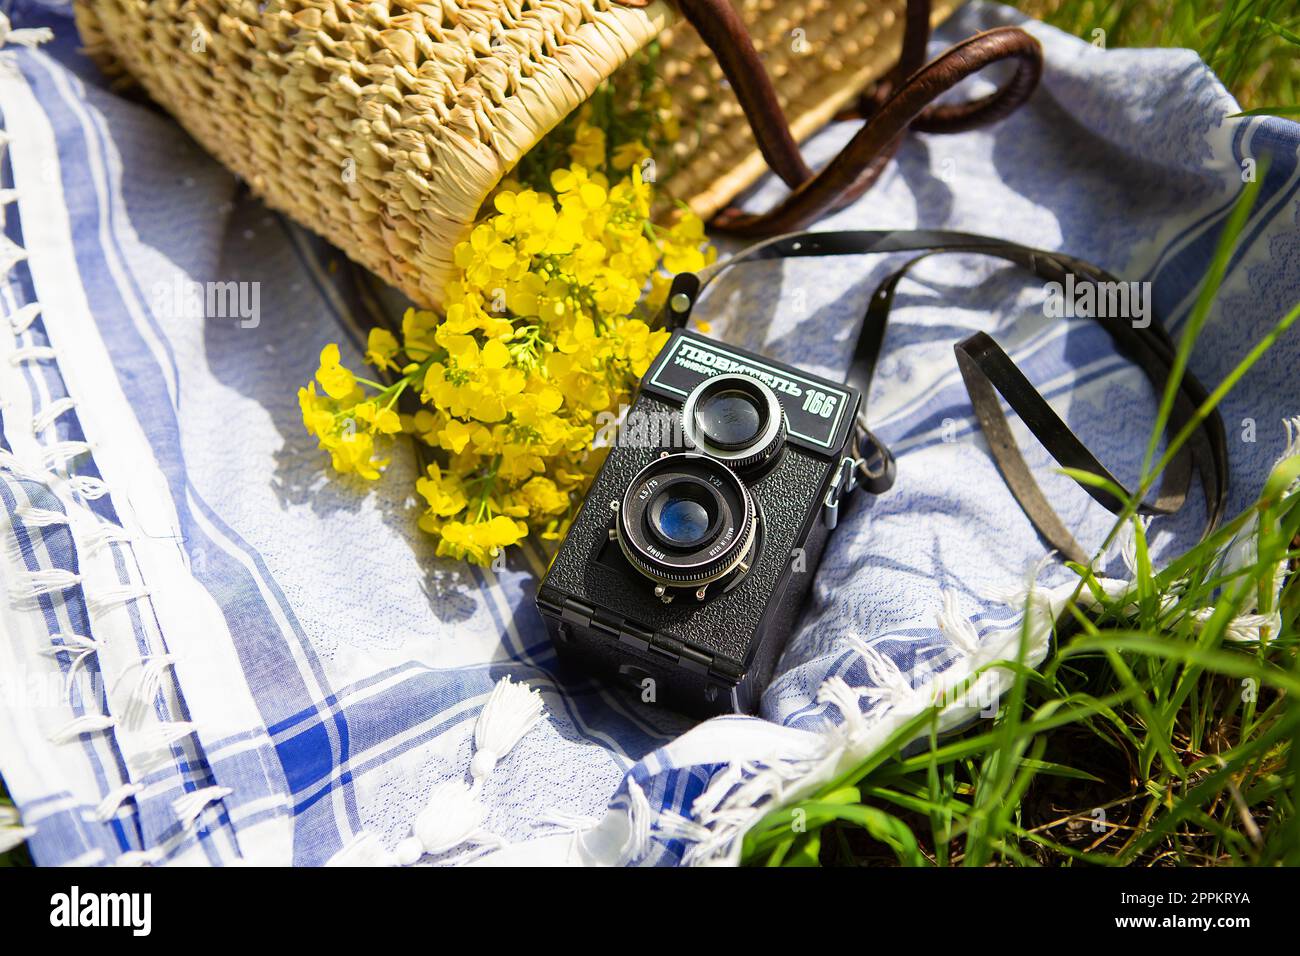 Ein Strohkorb für ein Picknick liegt auf einer blauen Decke auf grünem Gras zusammen mit einem Strauß gelber Blumen. Im Hintergrund befindet sich eine alte Kamera mit dem Namen „Lover 166“. Stockfoto